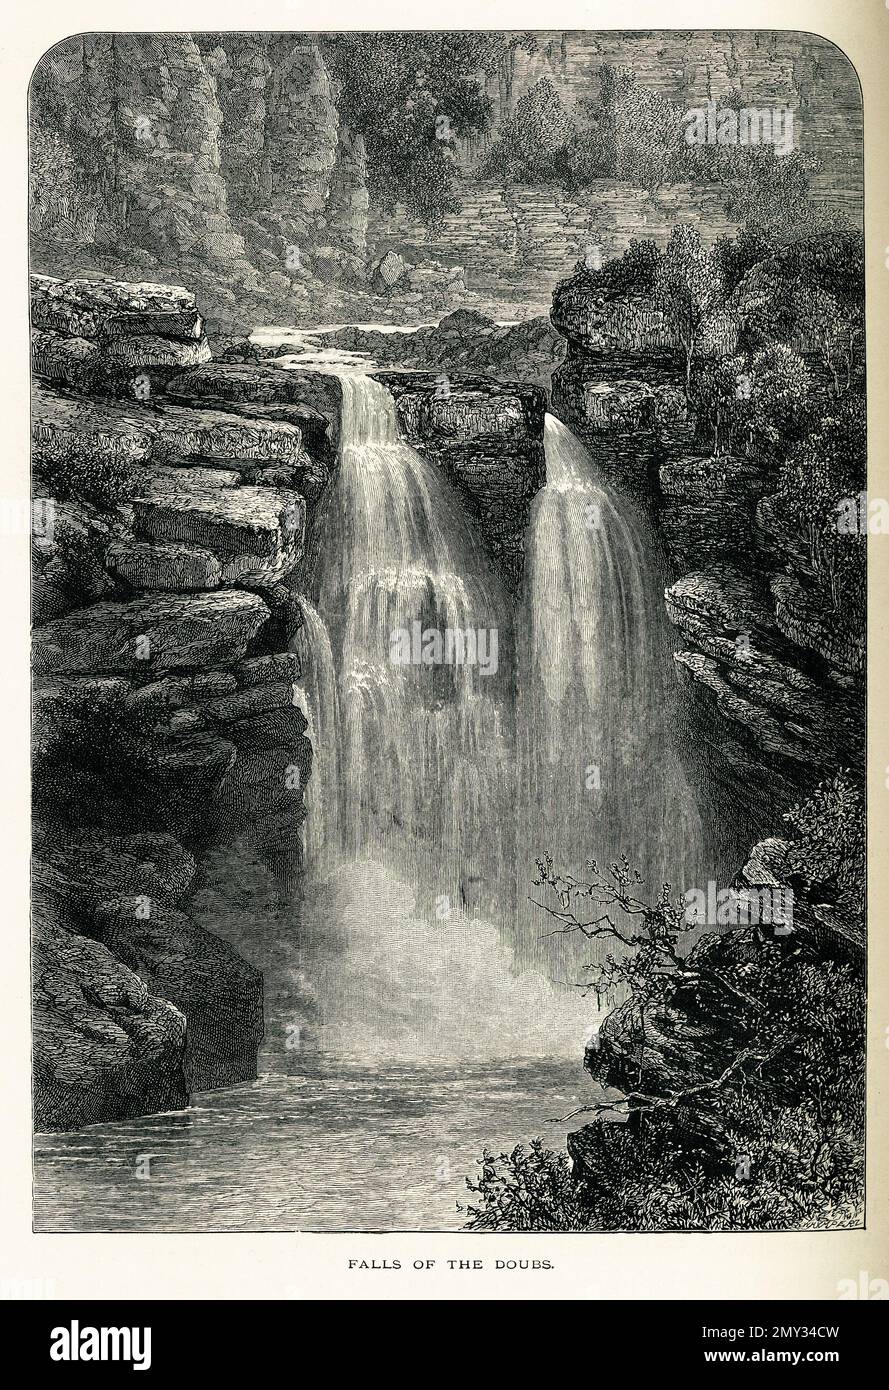 Antica incisione delle cascate del Doubs nei monti del Giura. Illustrazione pubblicata in picturesque Europe, Vol. V (Cassell & Company, Limi Foto Stock